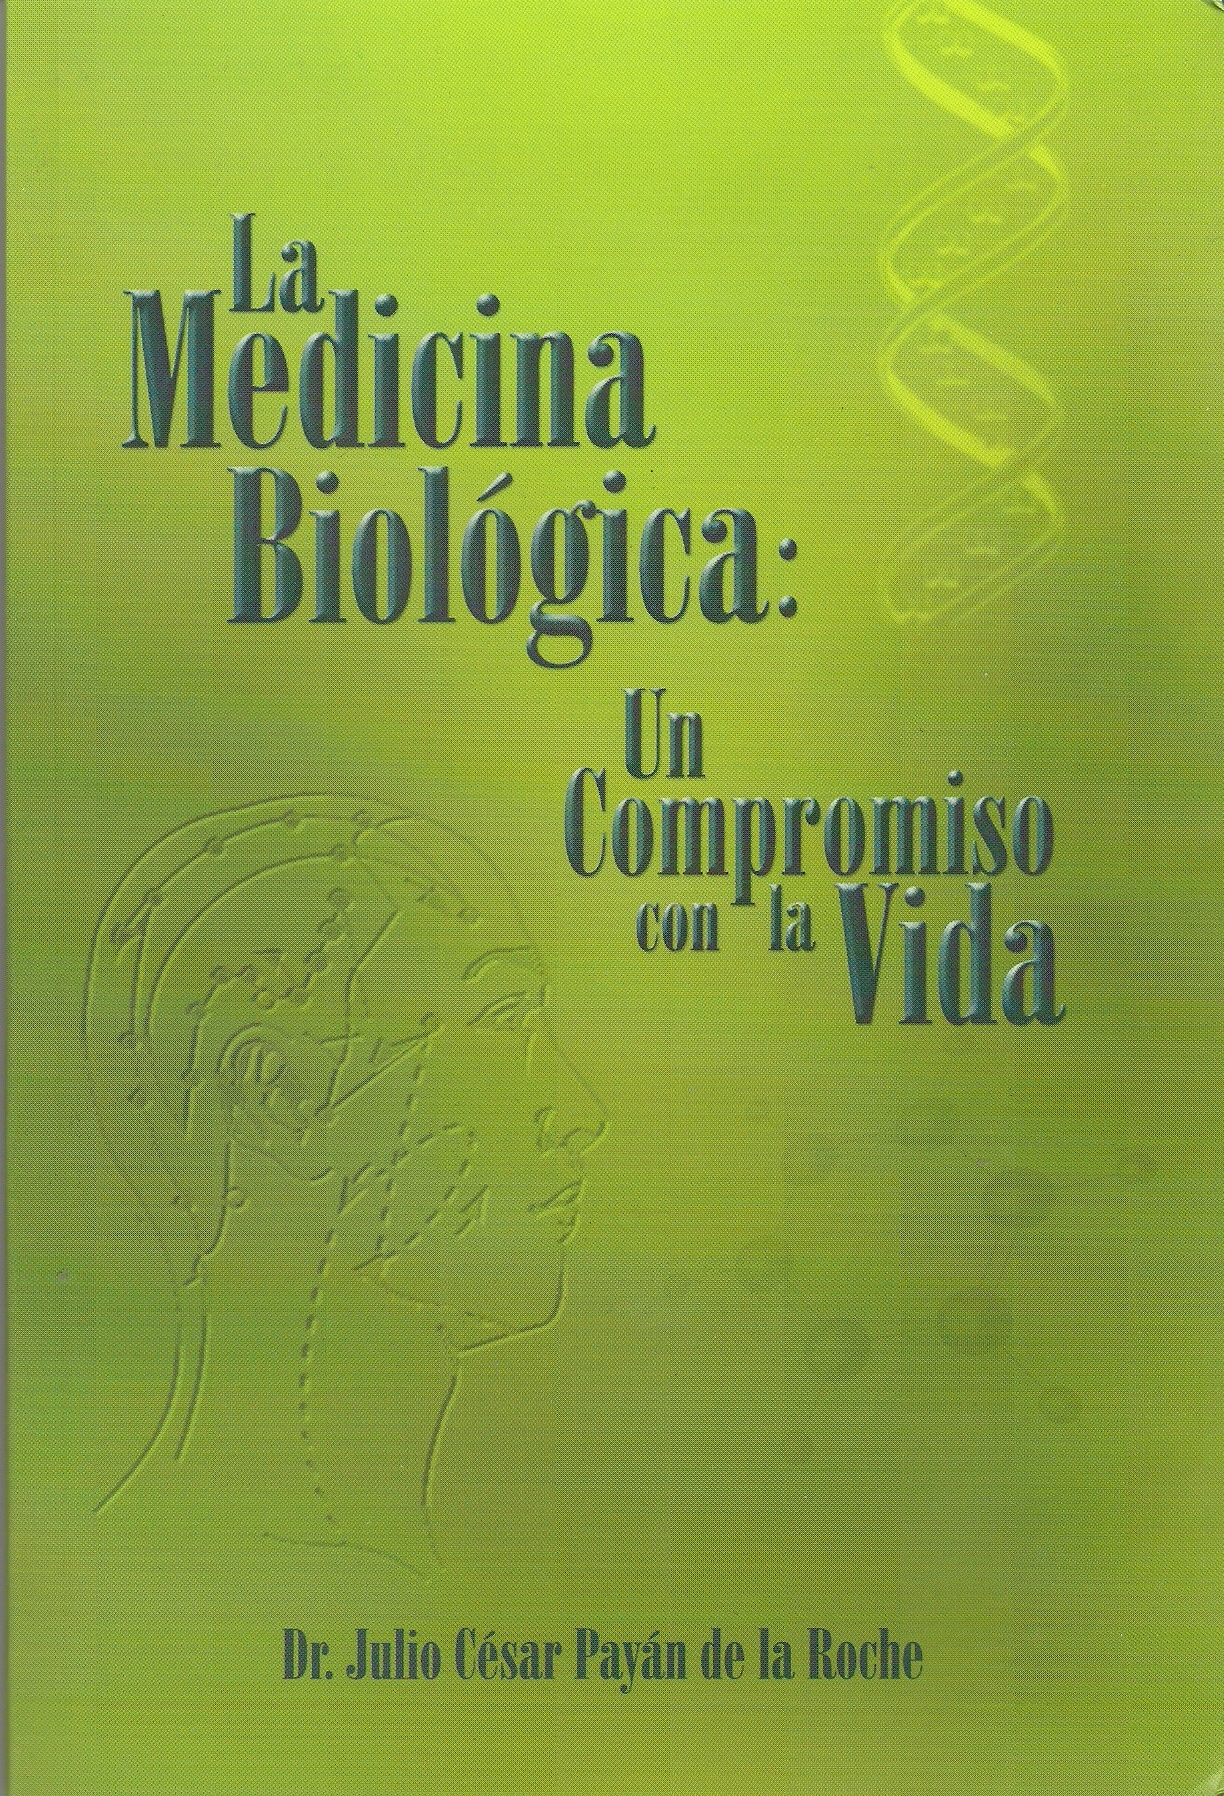 MEDICINA_BIOLOGICA_-_Portada